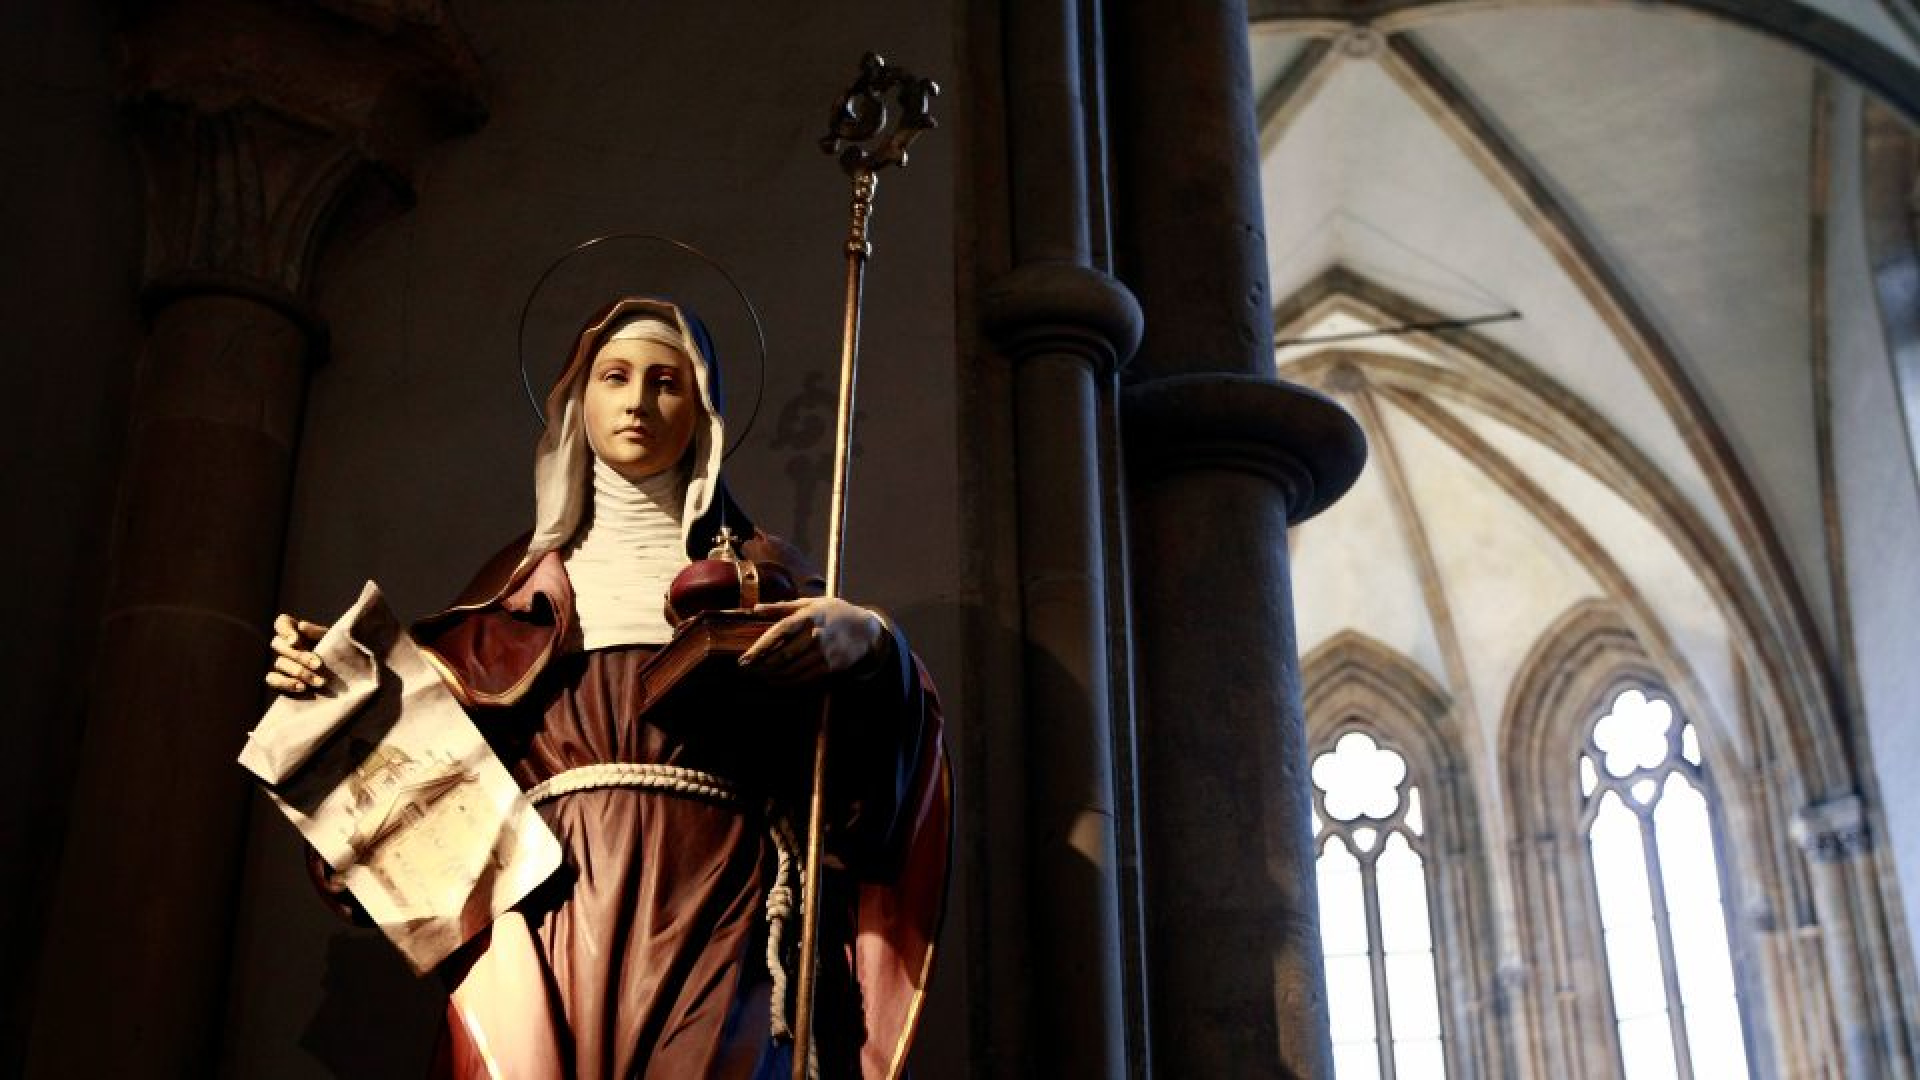 Naše představy o ženách ve středověku mohou být zkreslené, jak ukazují nejnovější badatelské výsledky